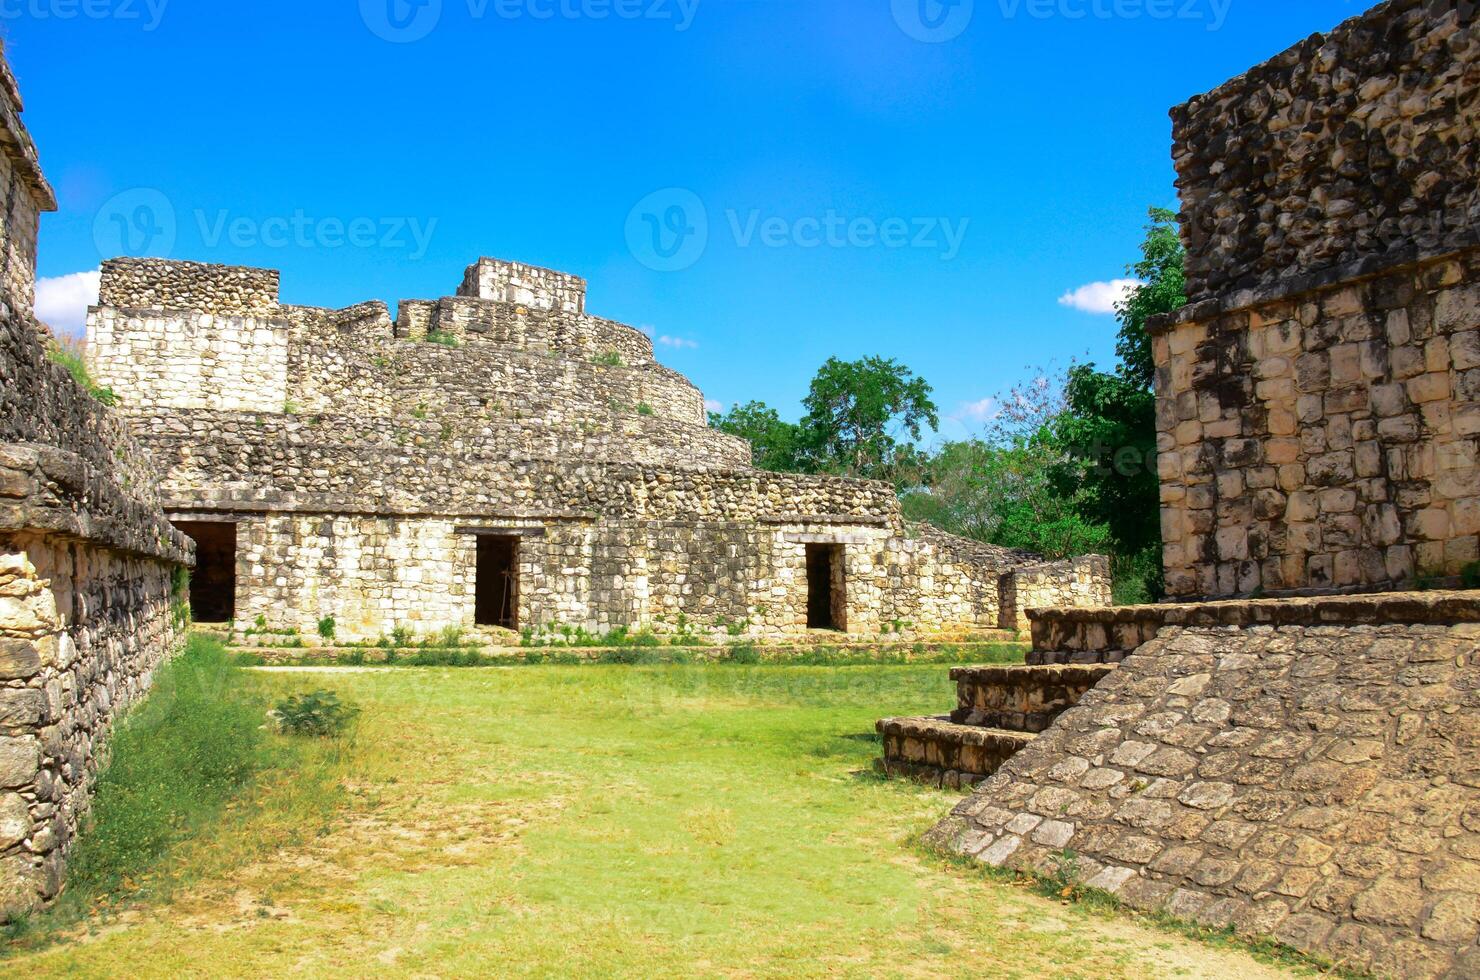 ek balam archéologique site à Mexique photo